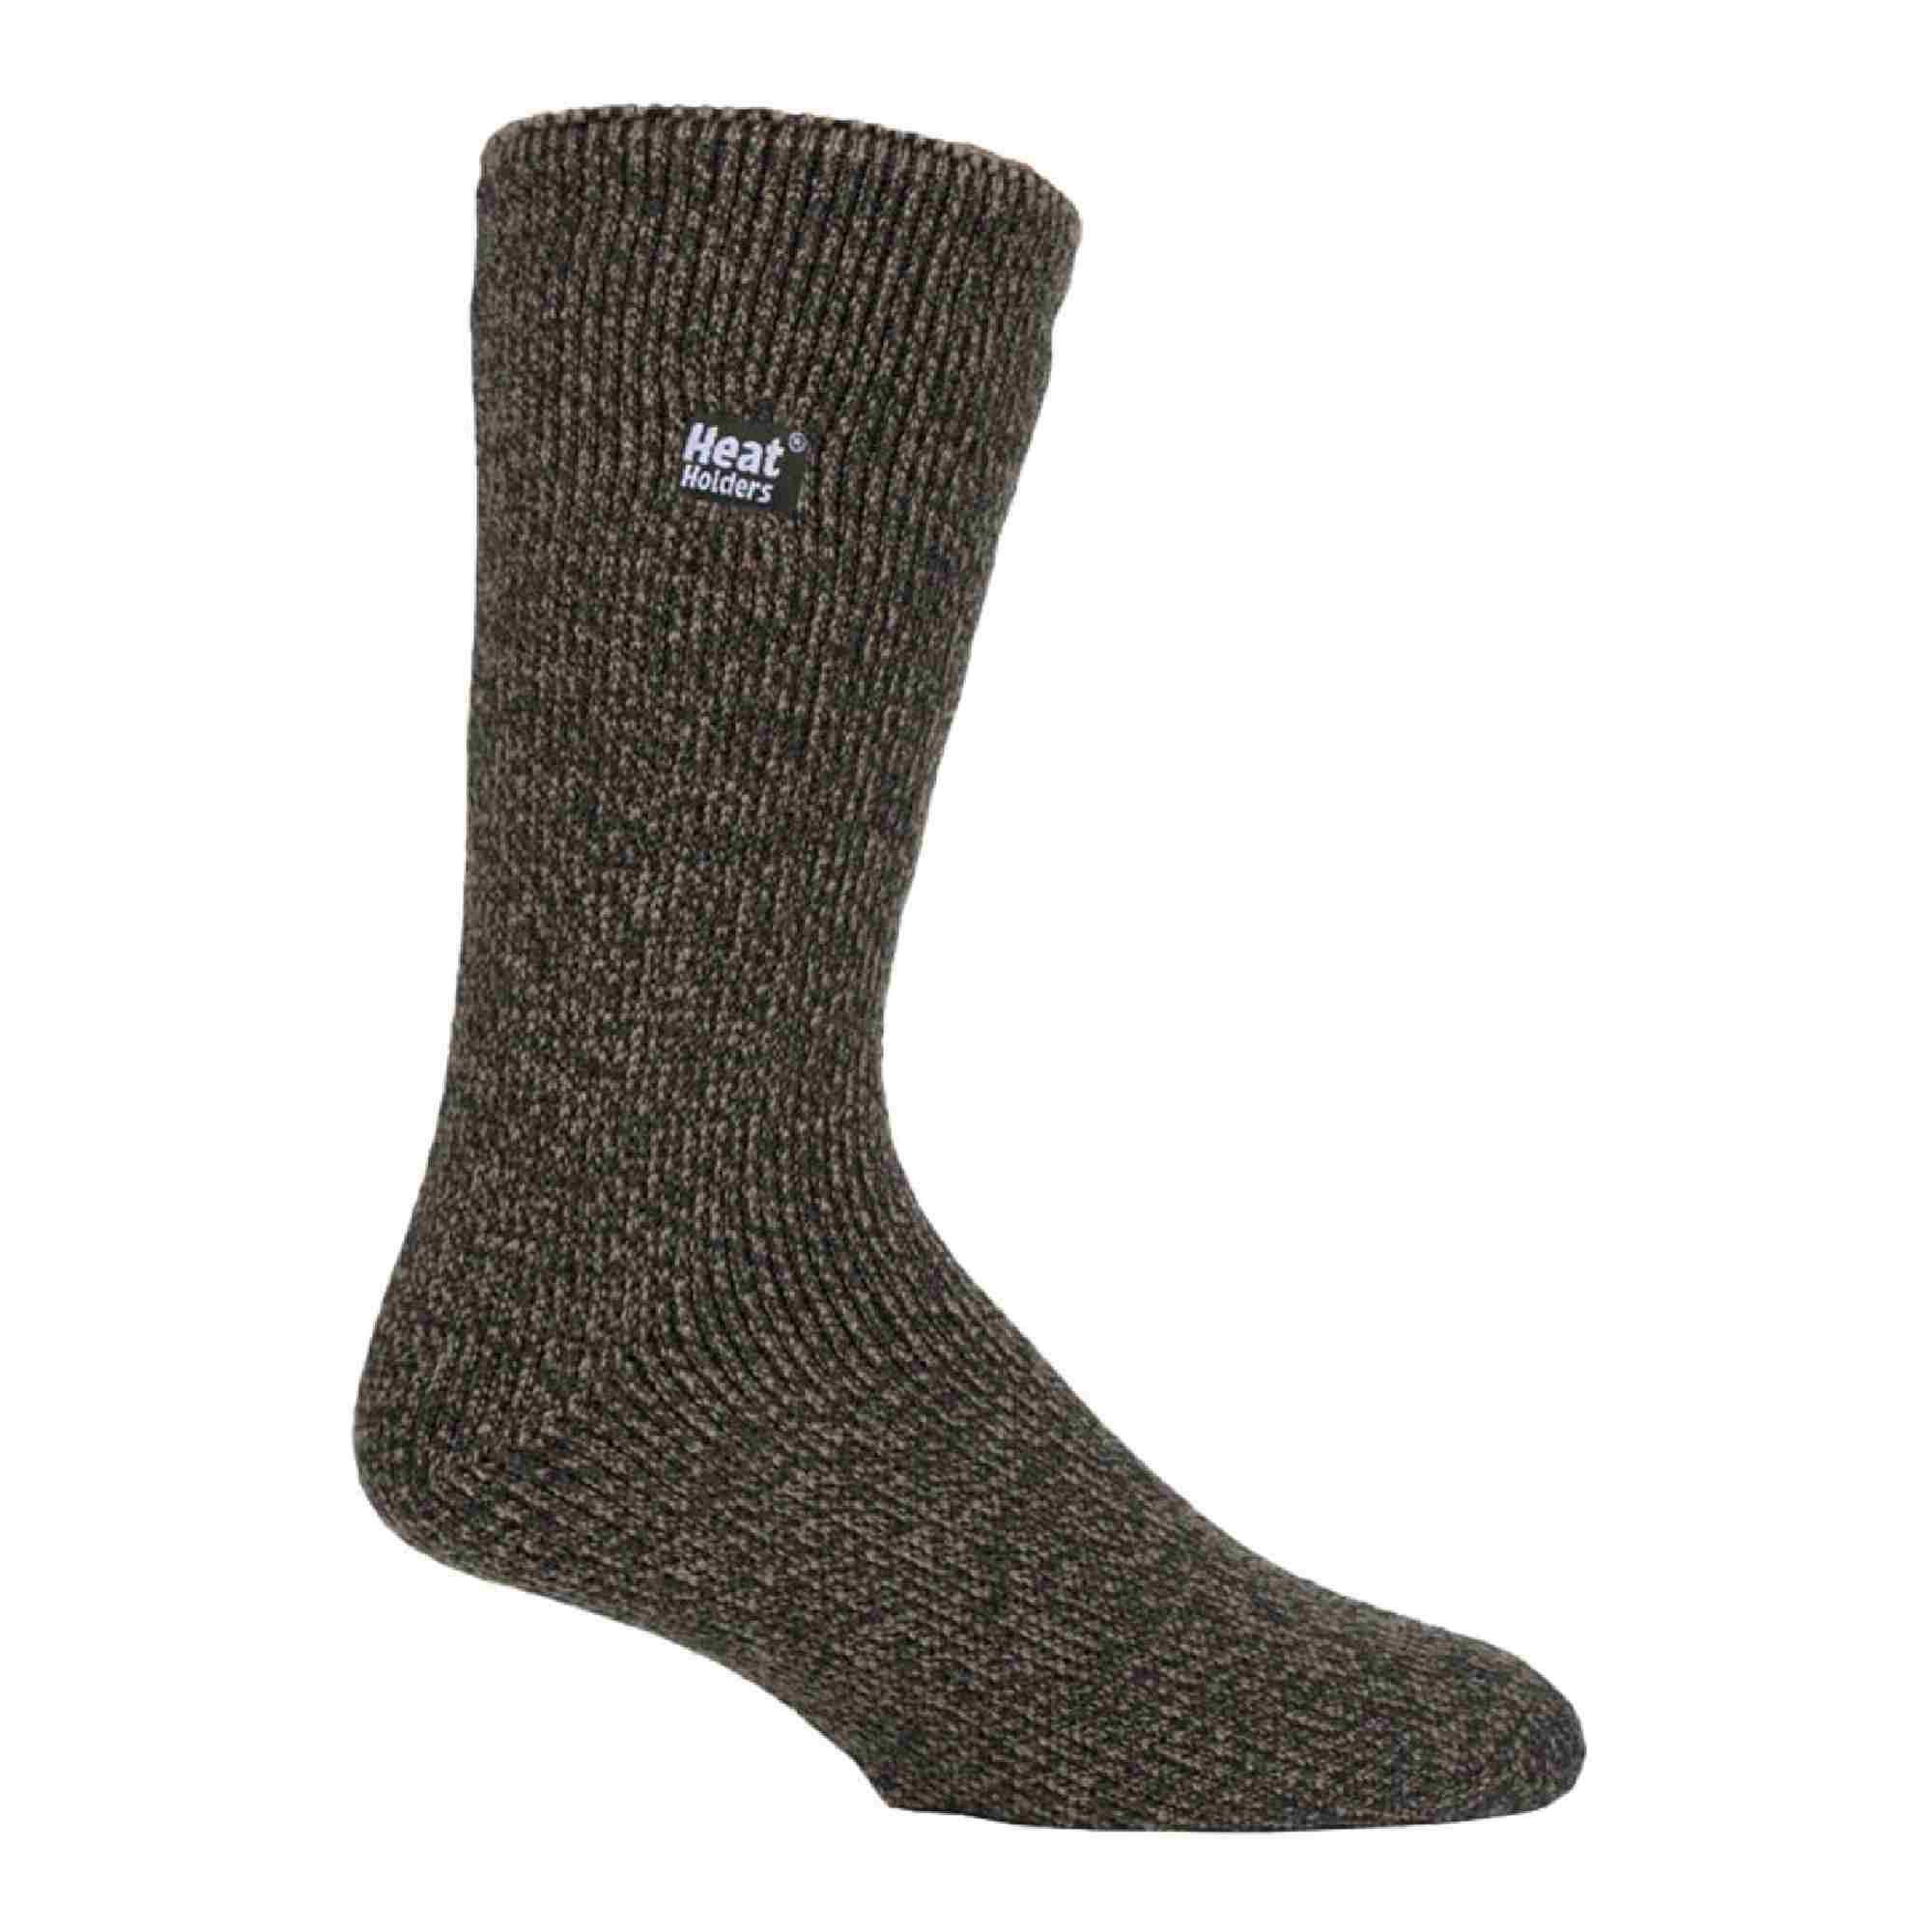 HEAT HOLDERS Mens Outdoor Merino Wool Knee High Long Thermal Socks for Winter